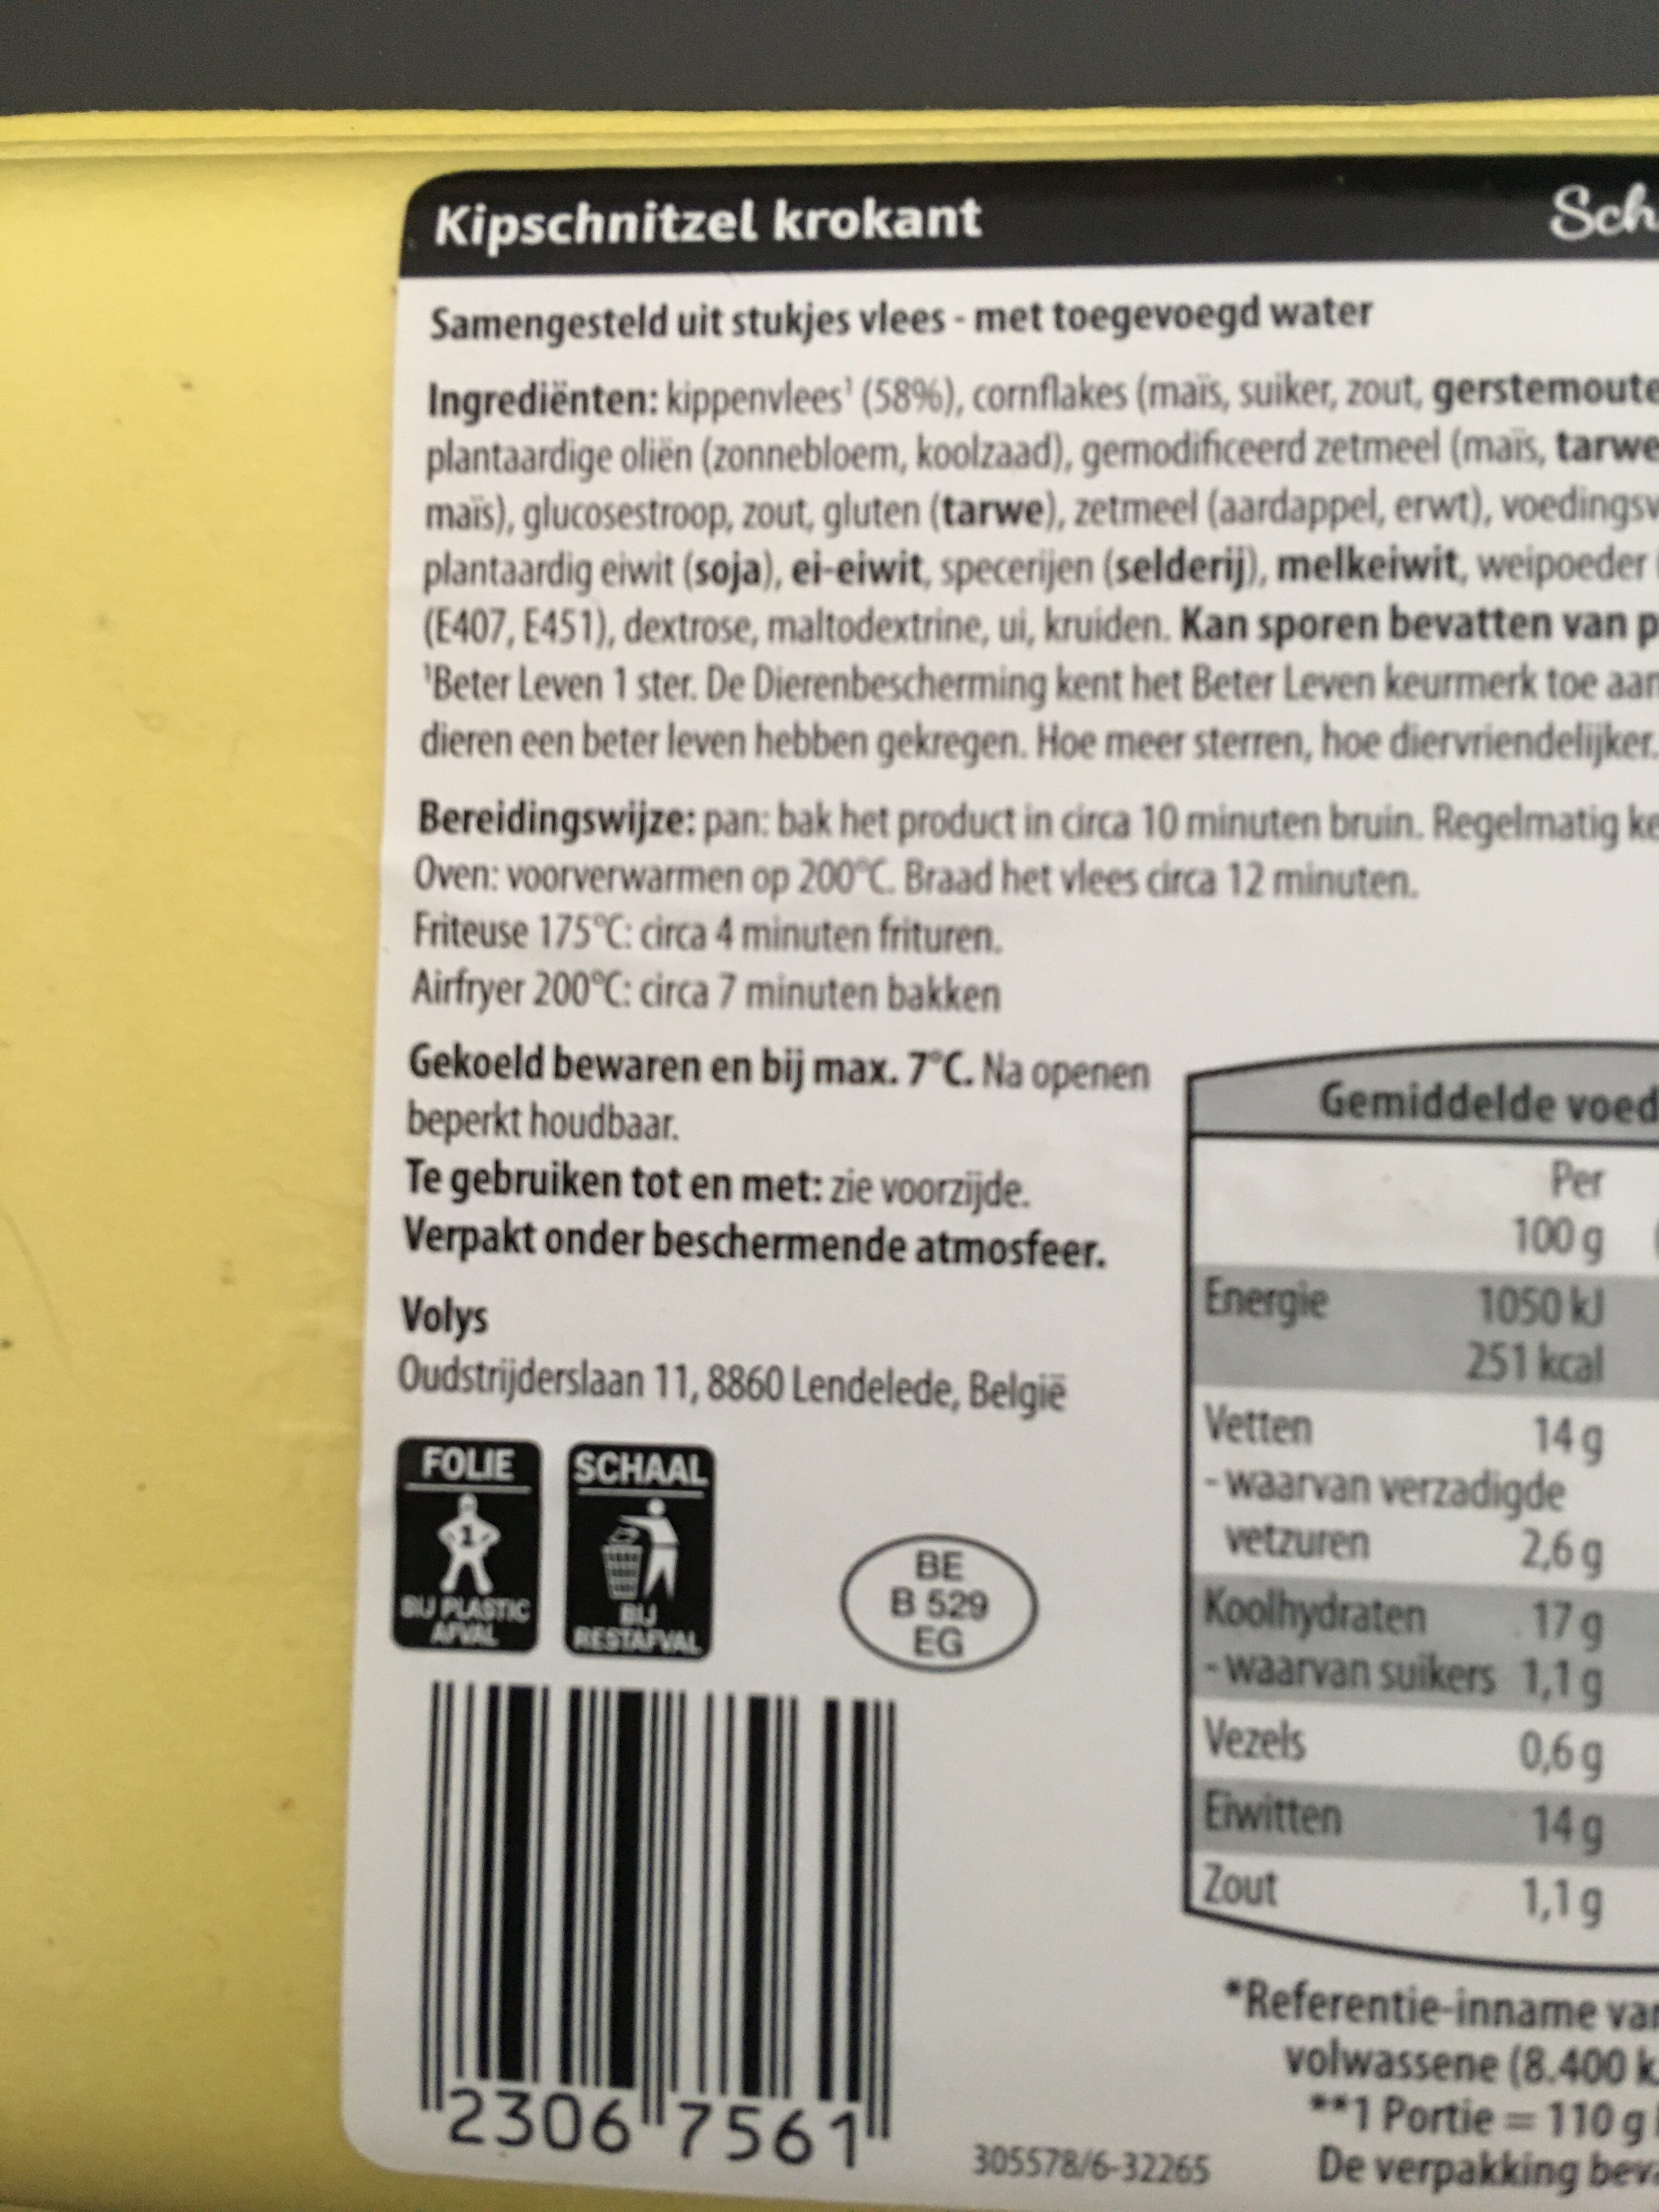 Kipschnitzel - Recyclinginstructies en / of verpakkingsinformatie